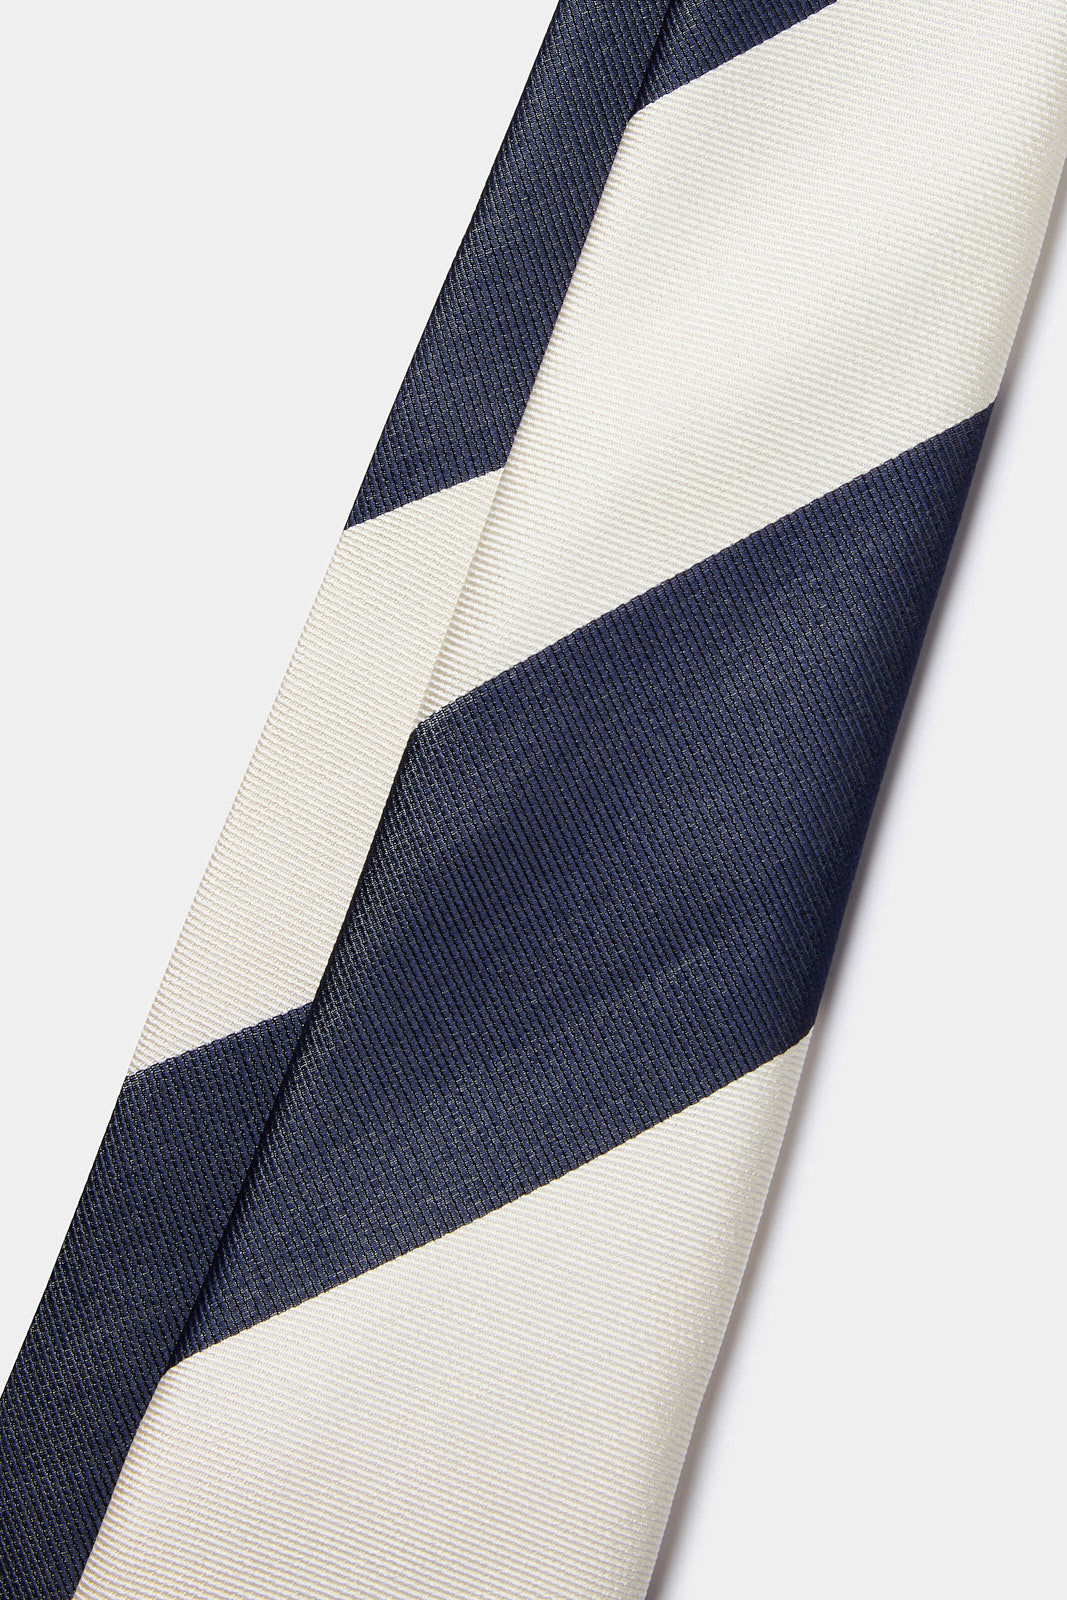 Silk Striped Tie in Midnight Blue